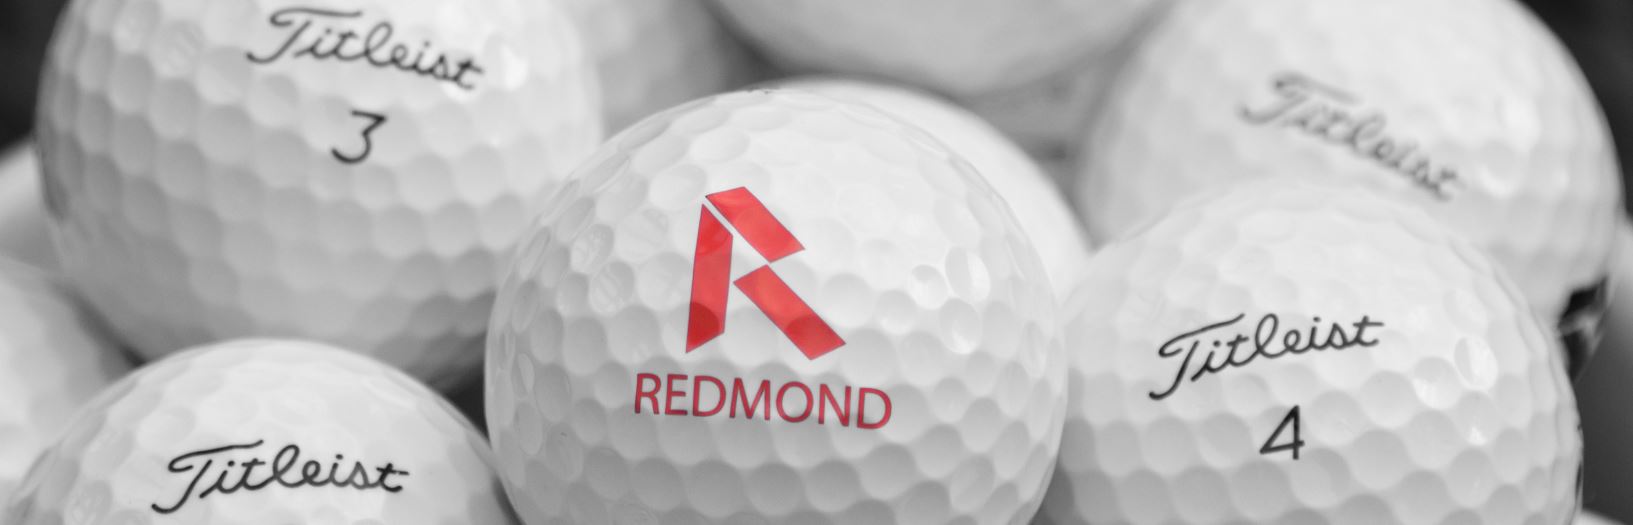 Redmond Golf Ball Image